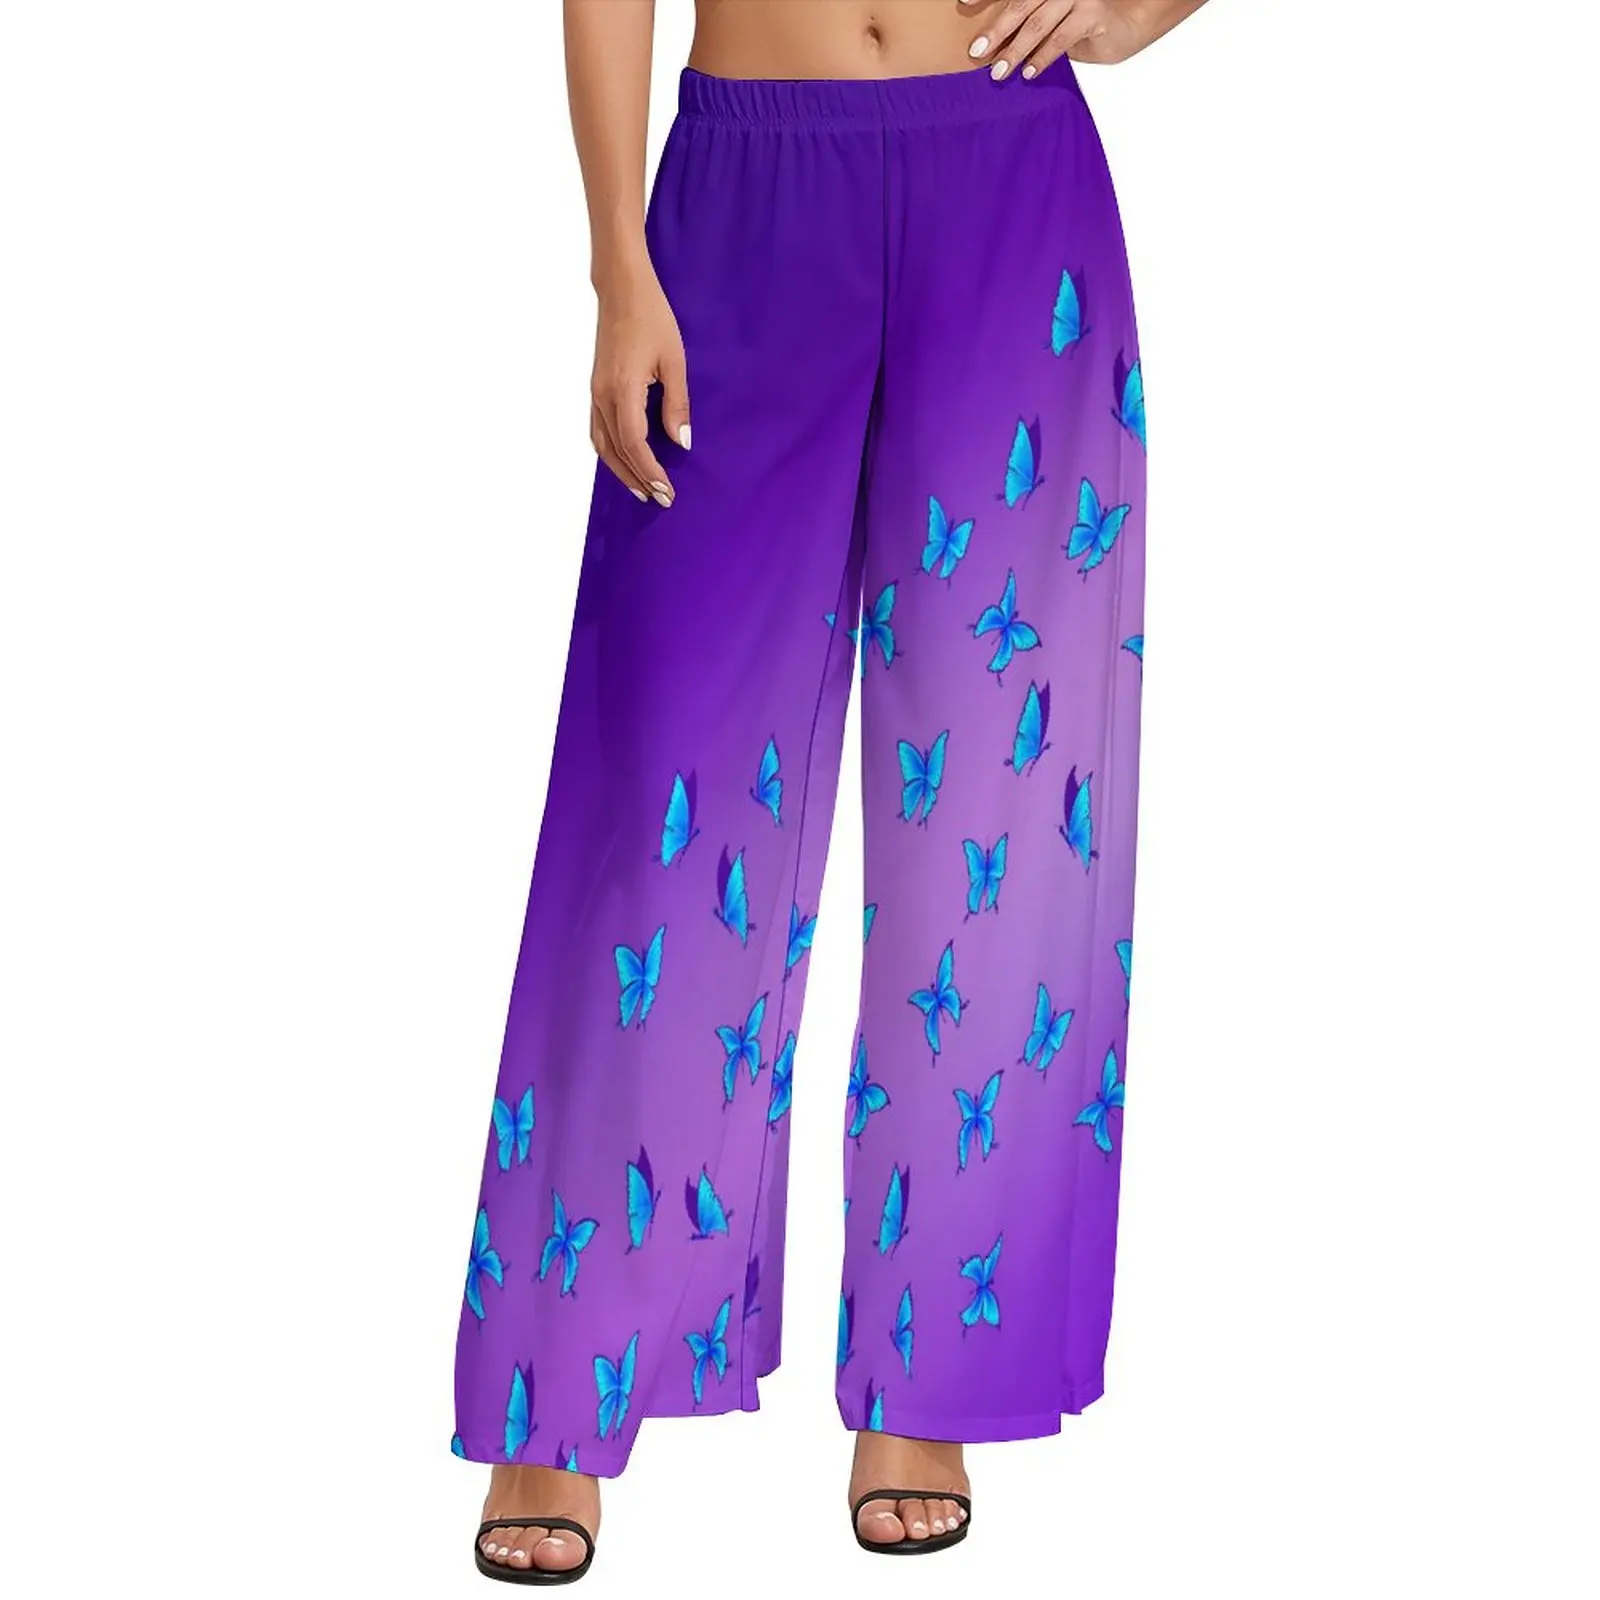 

Прямые брюки с принтом бабочек, синие фиолетовые классические широкие брюки, женские модные корейские брюки большого размера на заказ